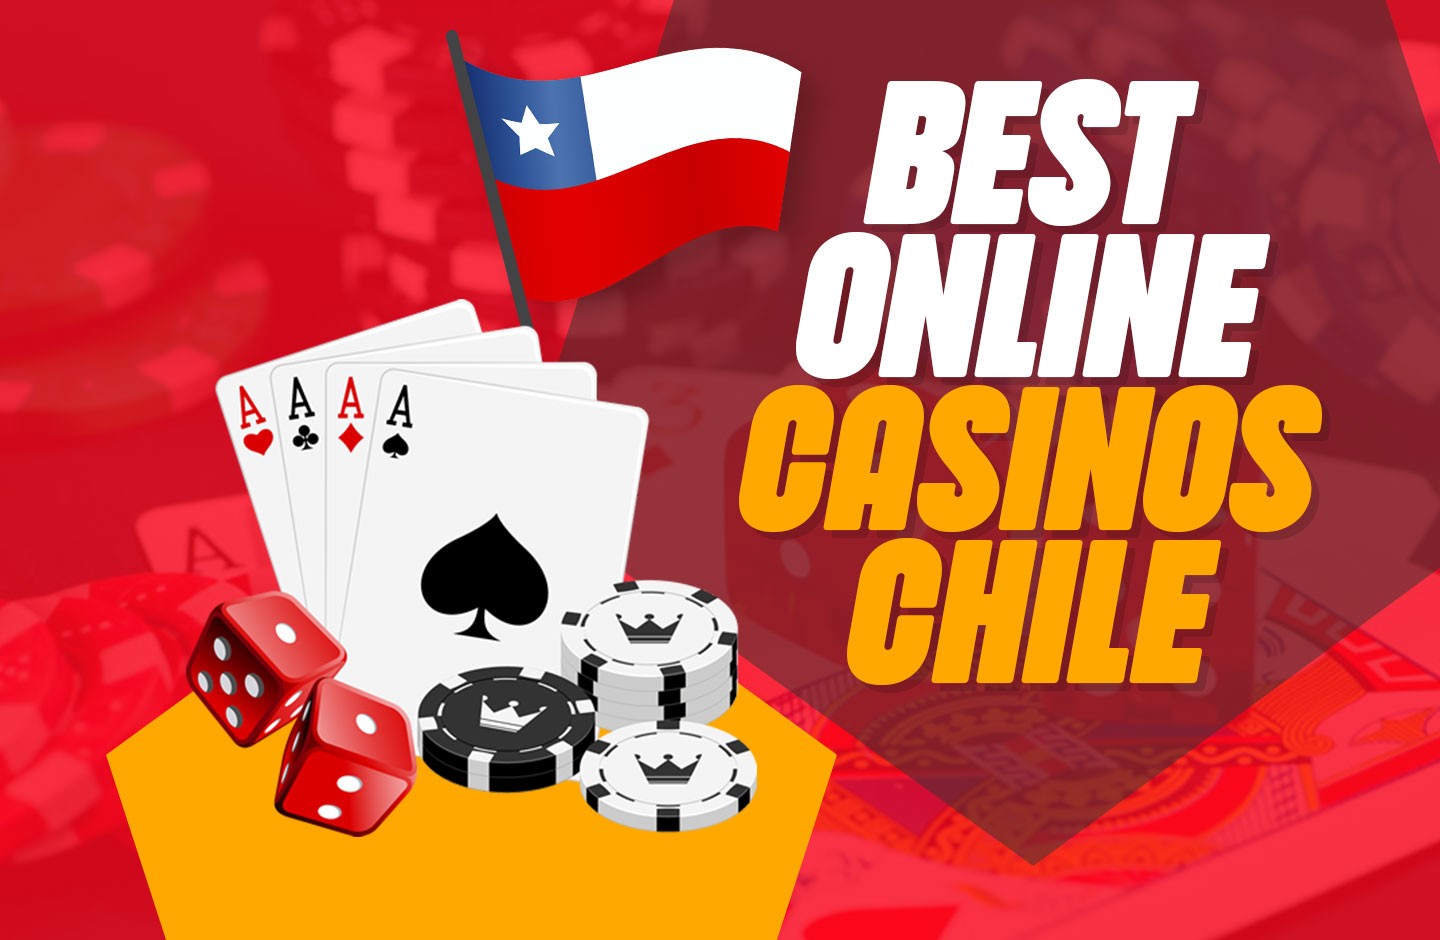 Lea este controvertido artículo y descubra más sobre casinos online legales en chile